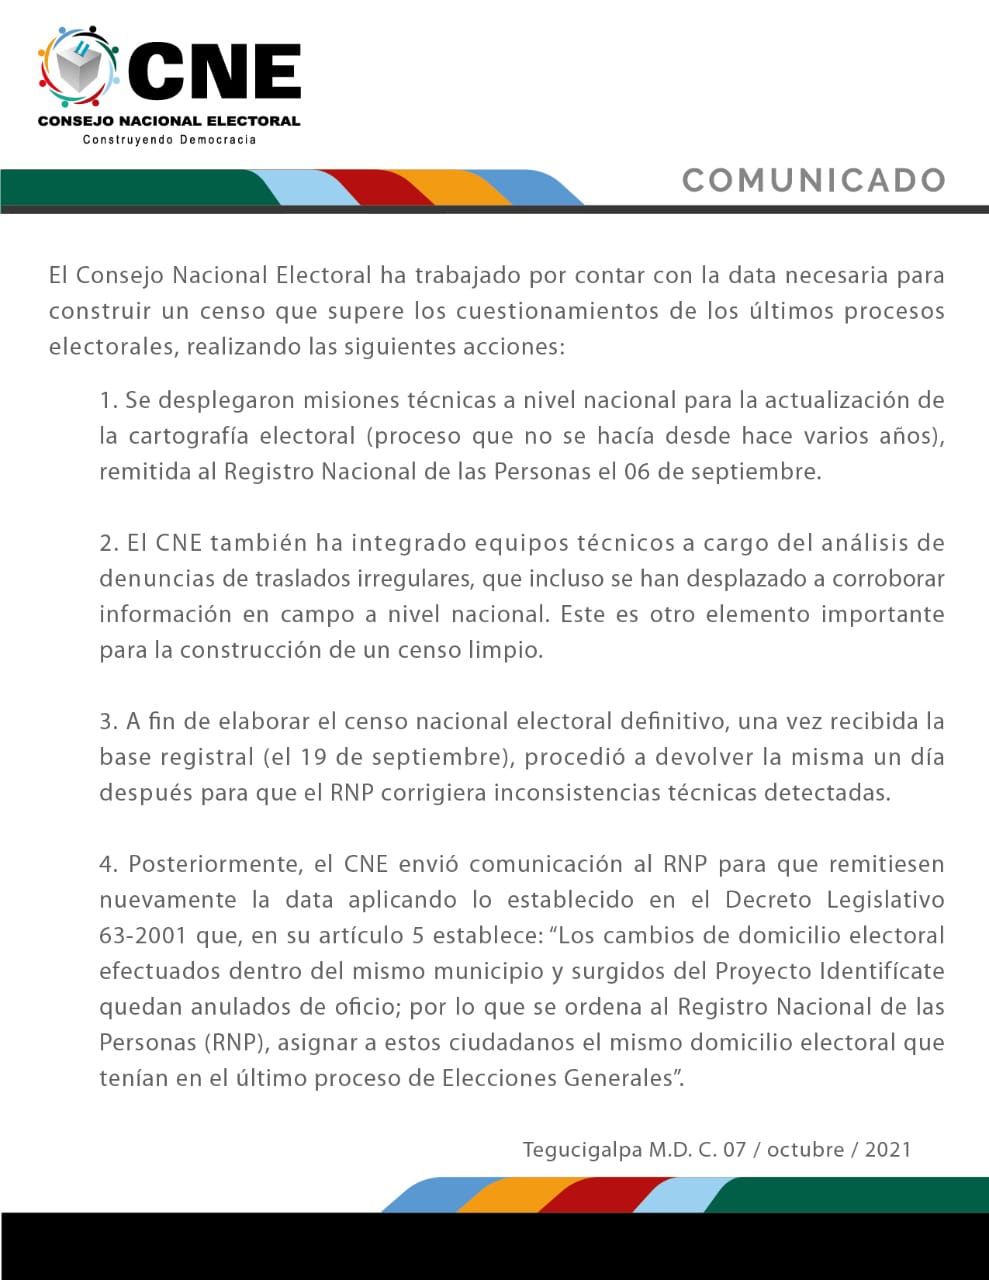 El CNE publicó un comunicado sobre el desarrollo del censo electoral.